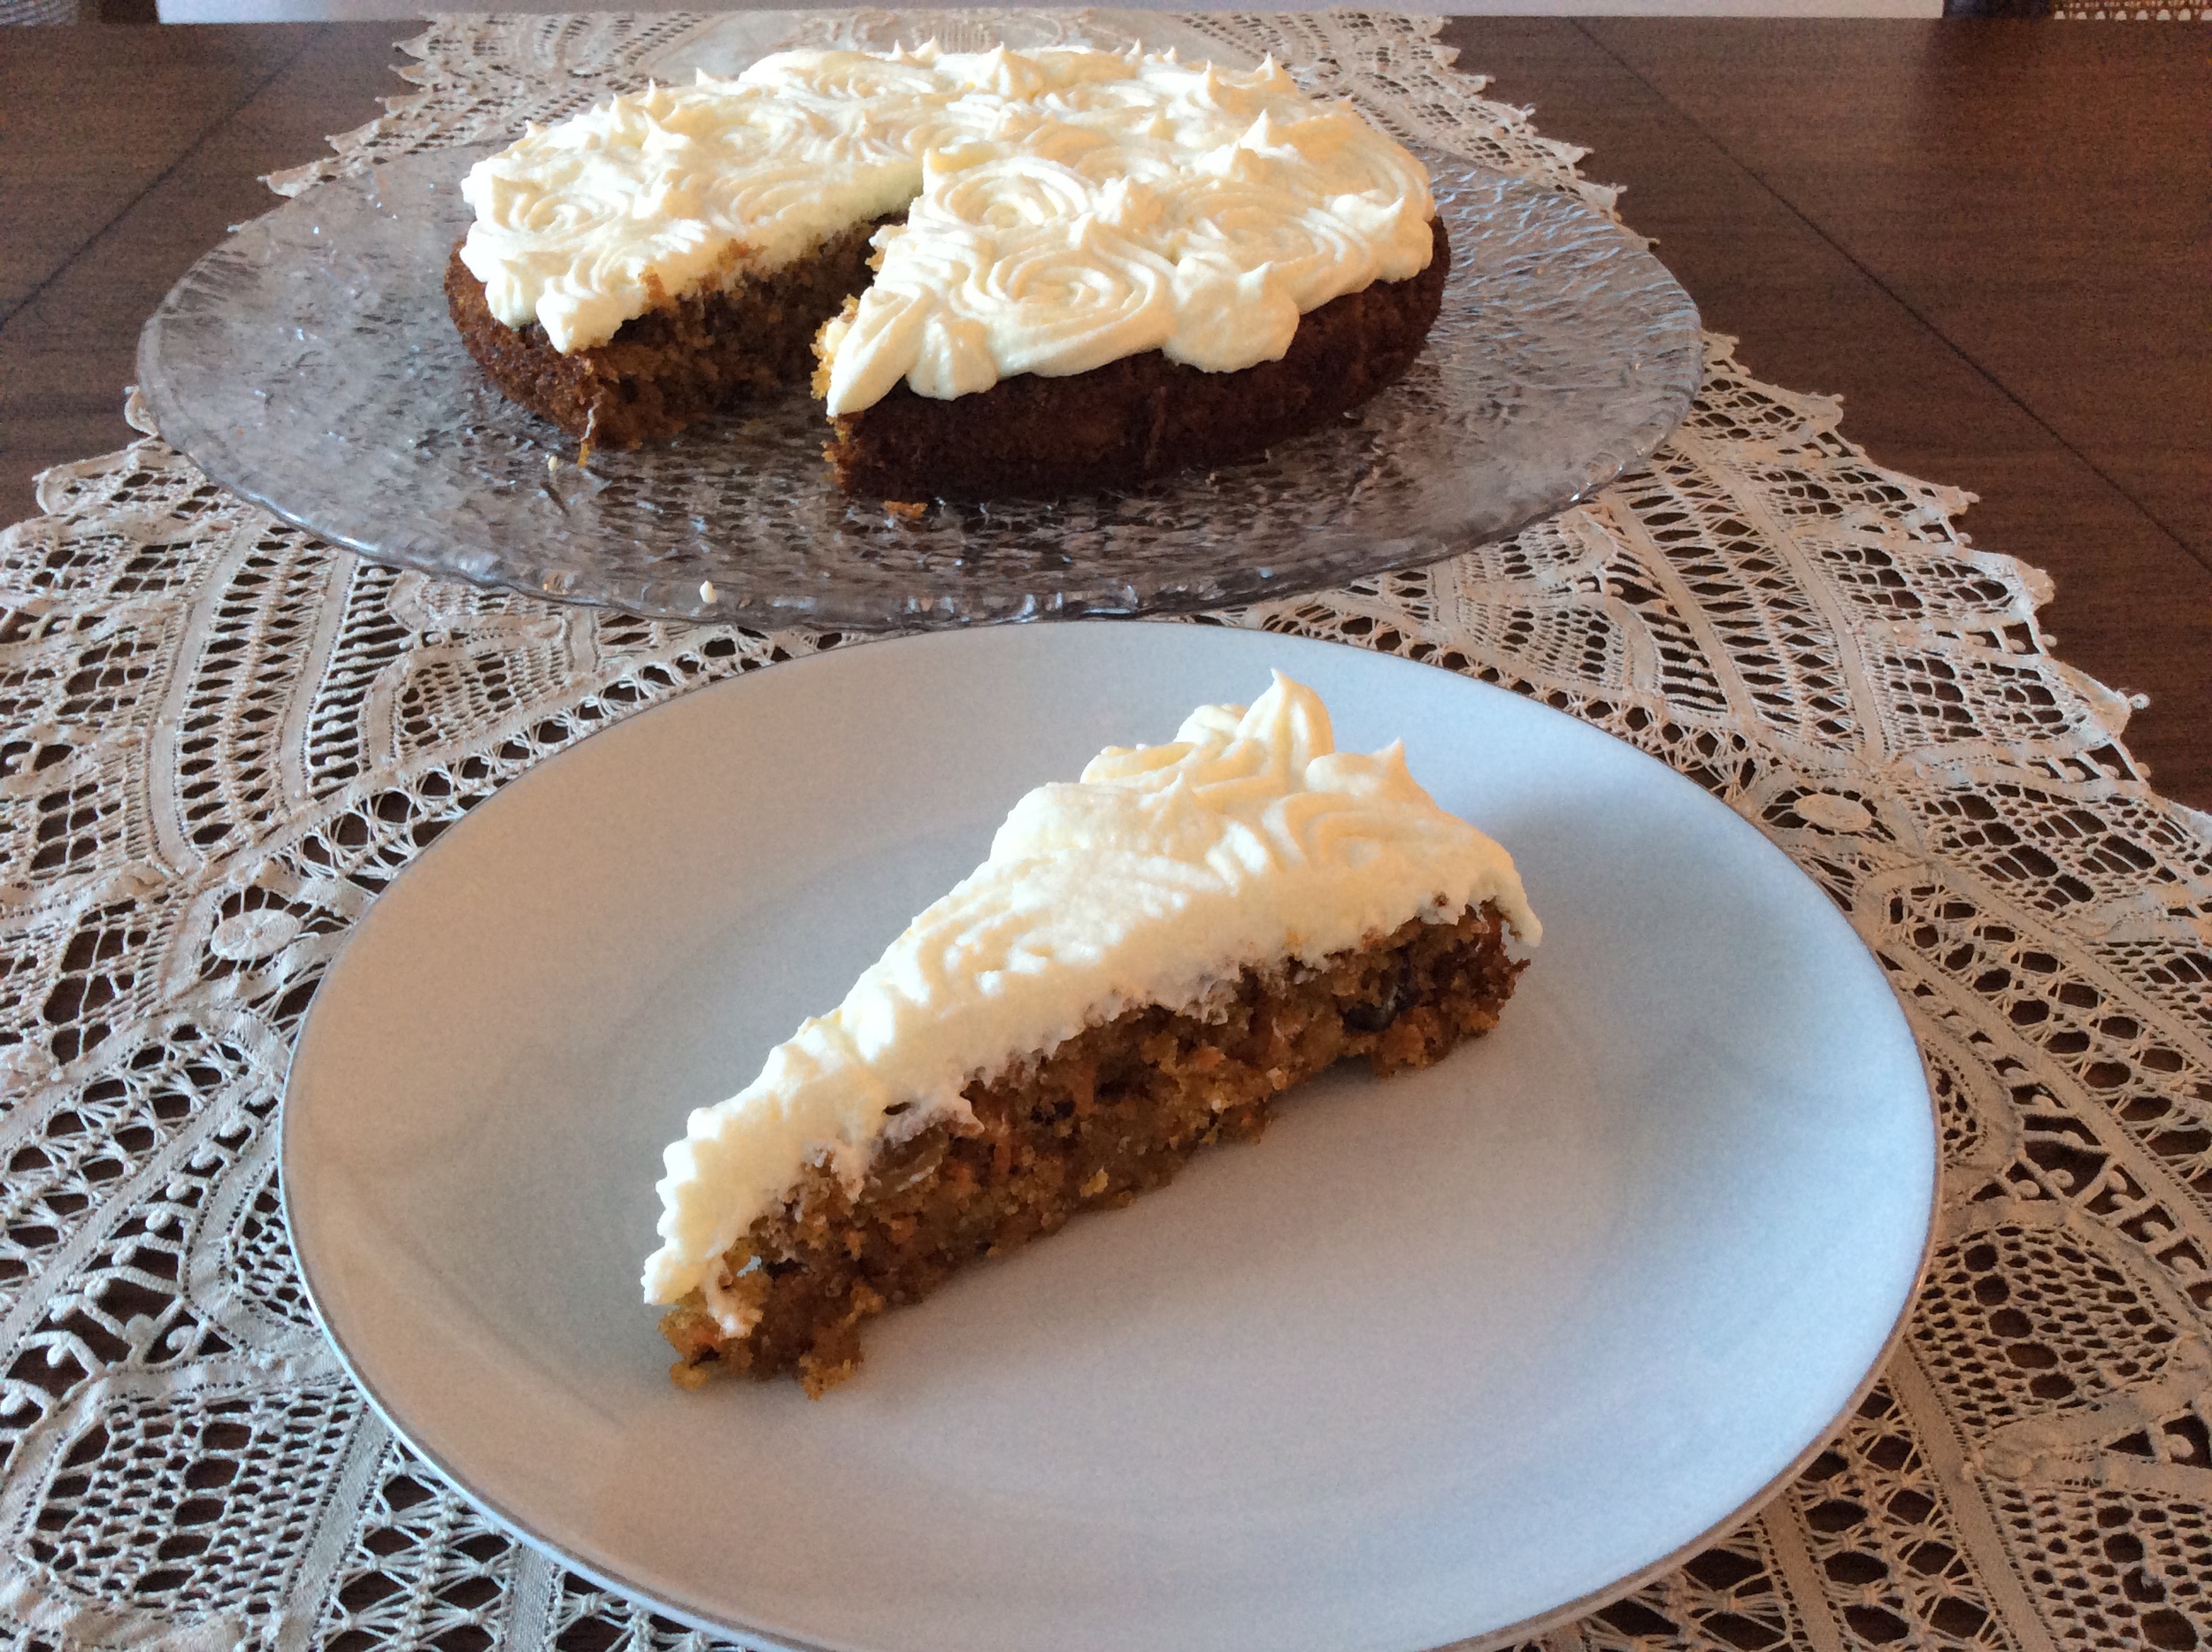 Maple cake / Bolo de xarope de bordo, Recipe on my blog Rec…